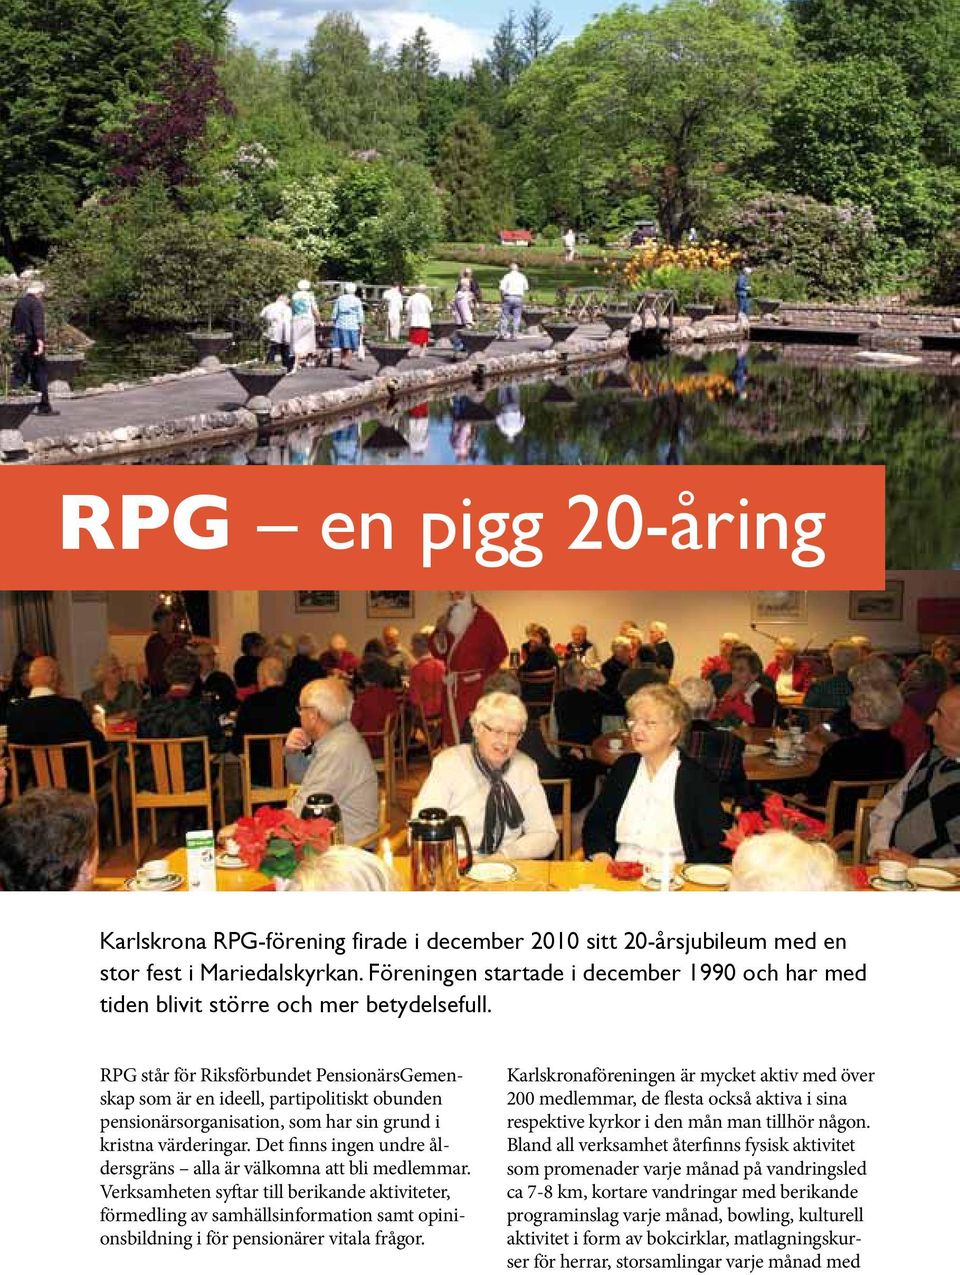 RPG står för Riksförbundet PensionärsGemenskap som är en ideell, partipolitiskt obunden pensionärsorganisation, som har sin grund i kristna värderingar.